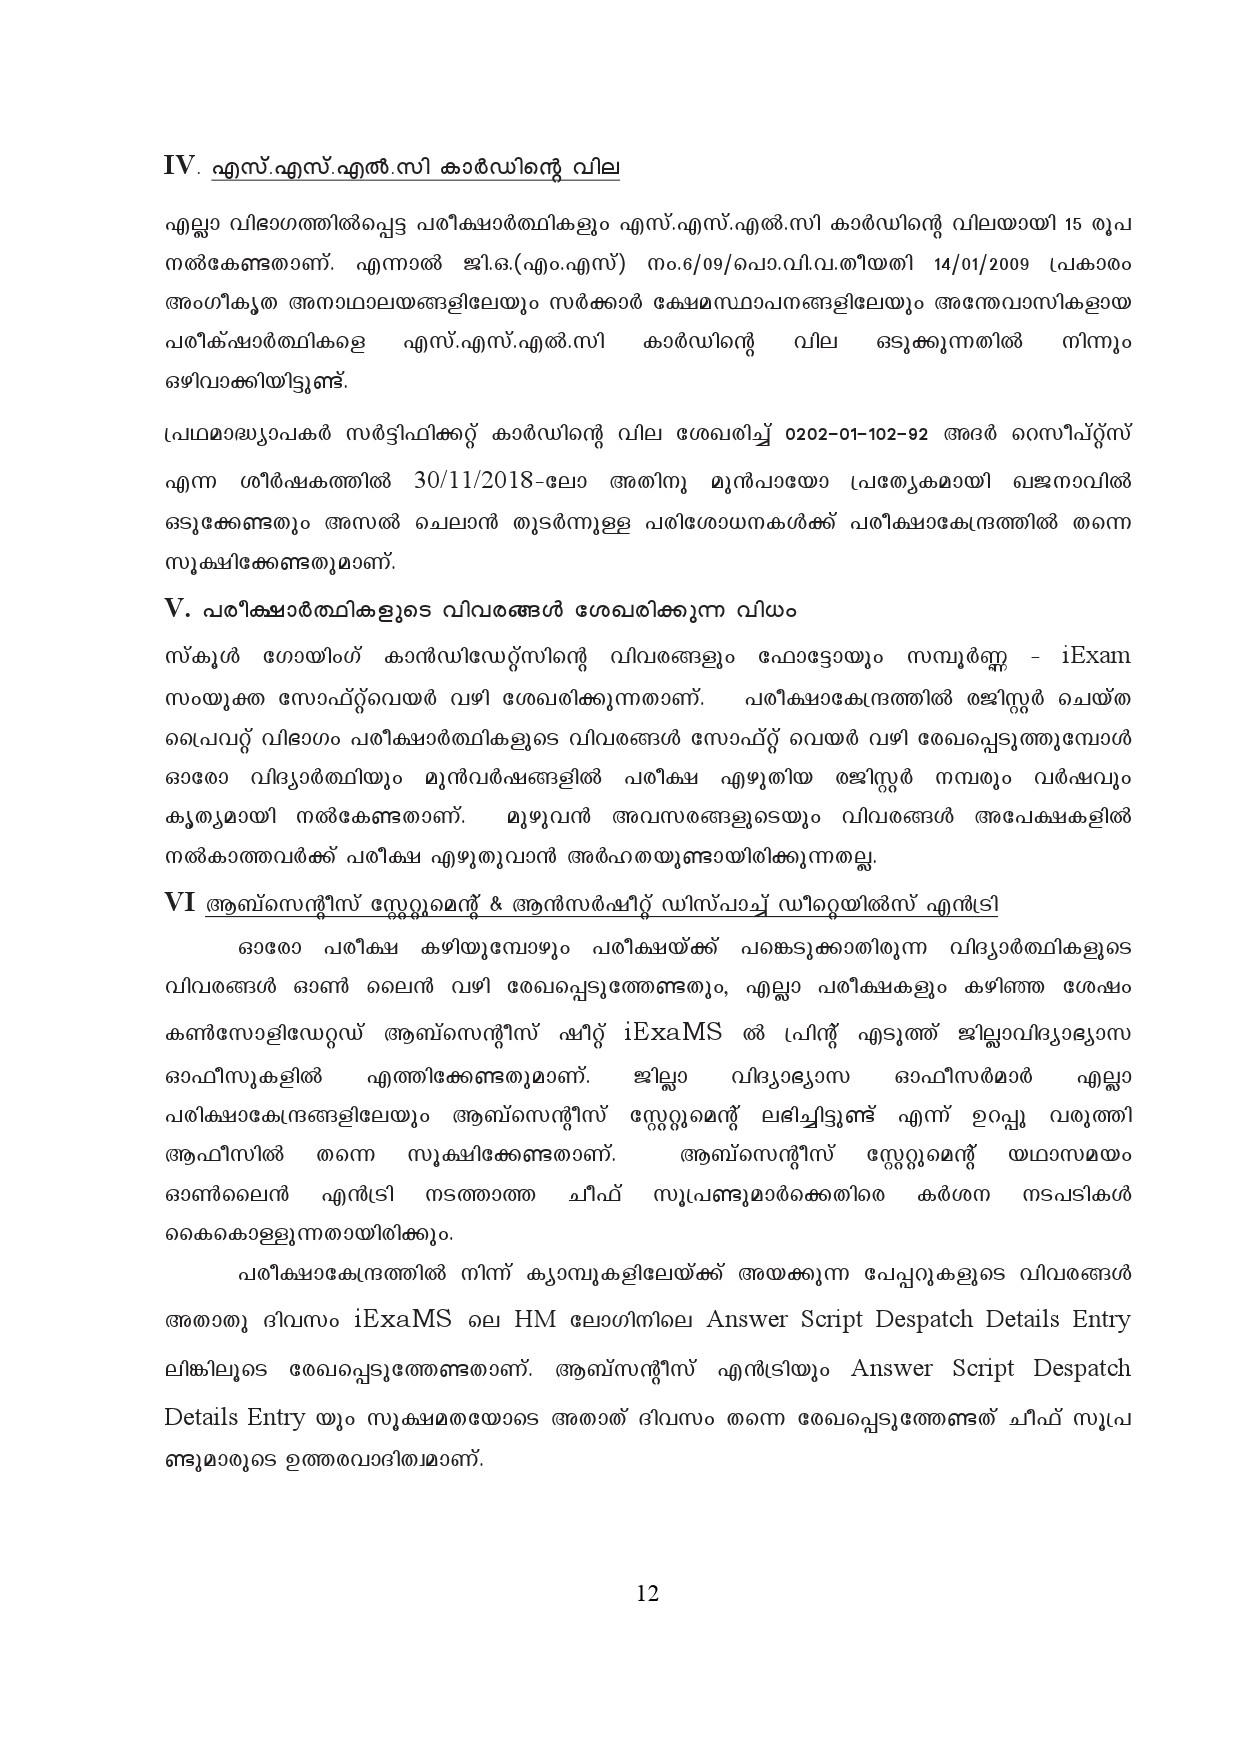 Kerala SSLC Exam Result 2019 - Notification Image 12